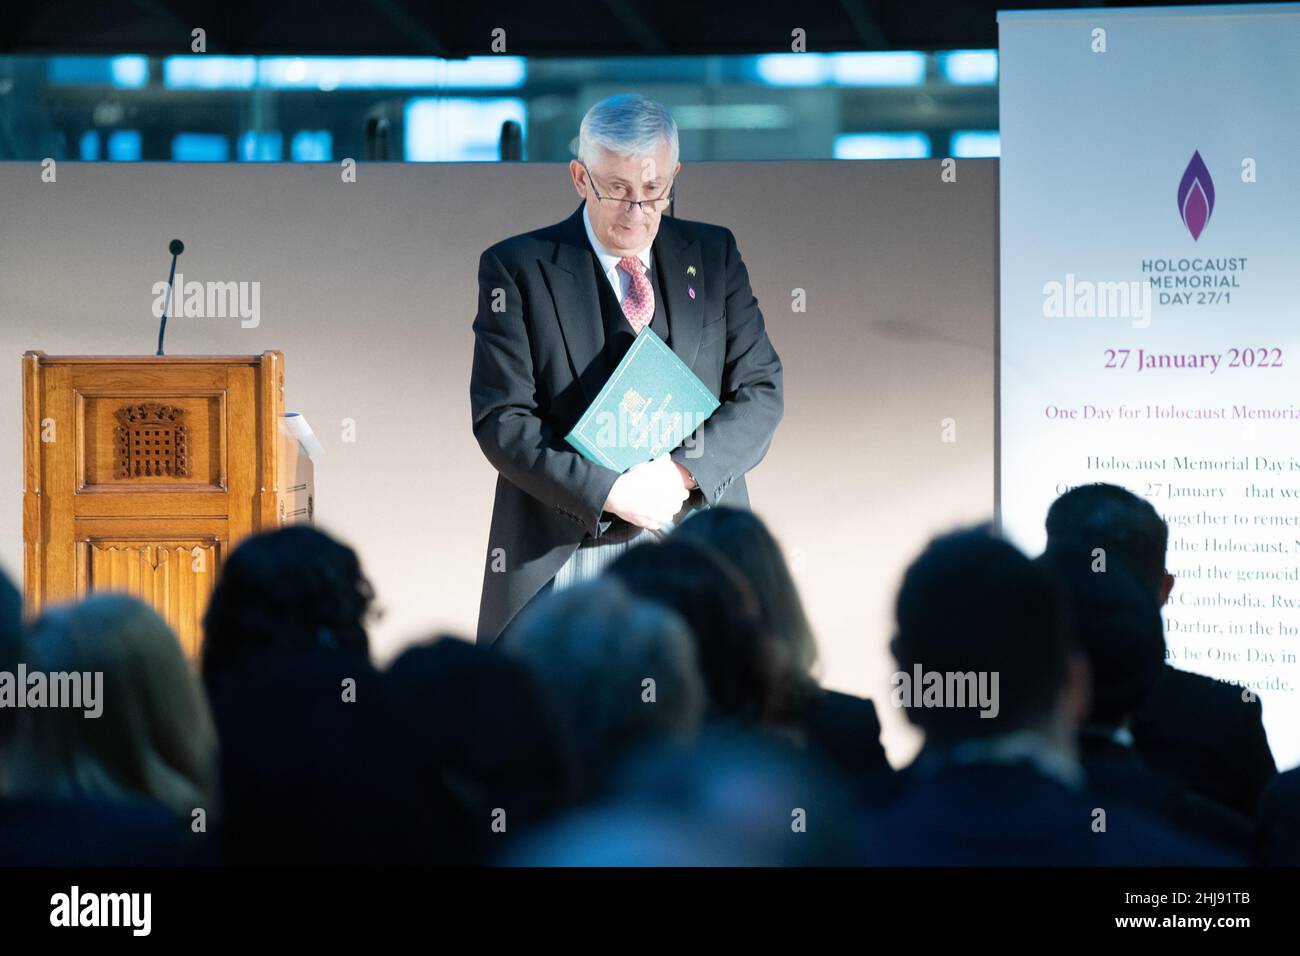 Le Président de la Chambre des communes Sir Lindsay Hoyle dirige une cérémonie pour souligner le jour commémoratif de l'Holocauste aux chambres du Parlement à Londres.Date de la photo: Jeudi 27 janvier 2022. Banque D'Images